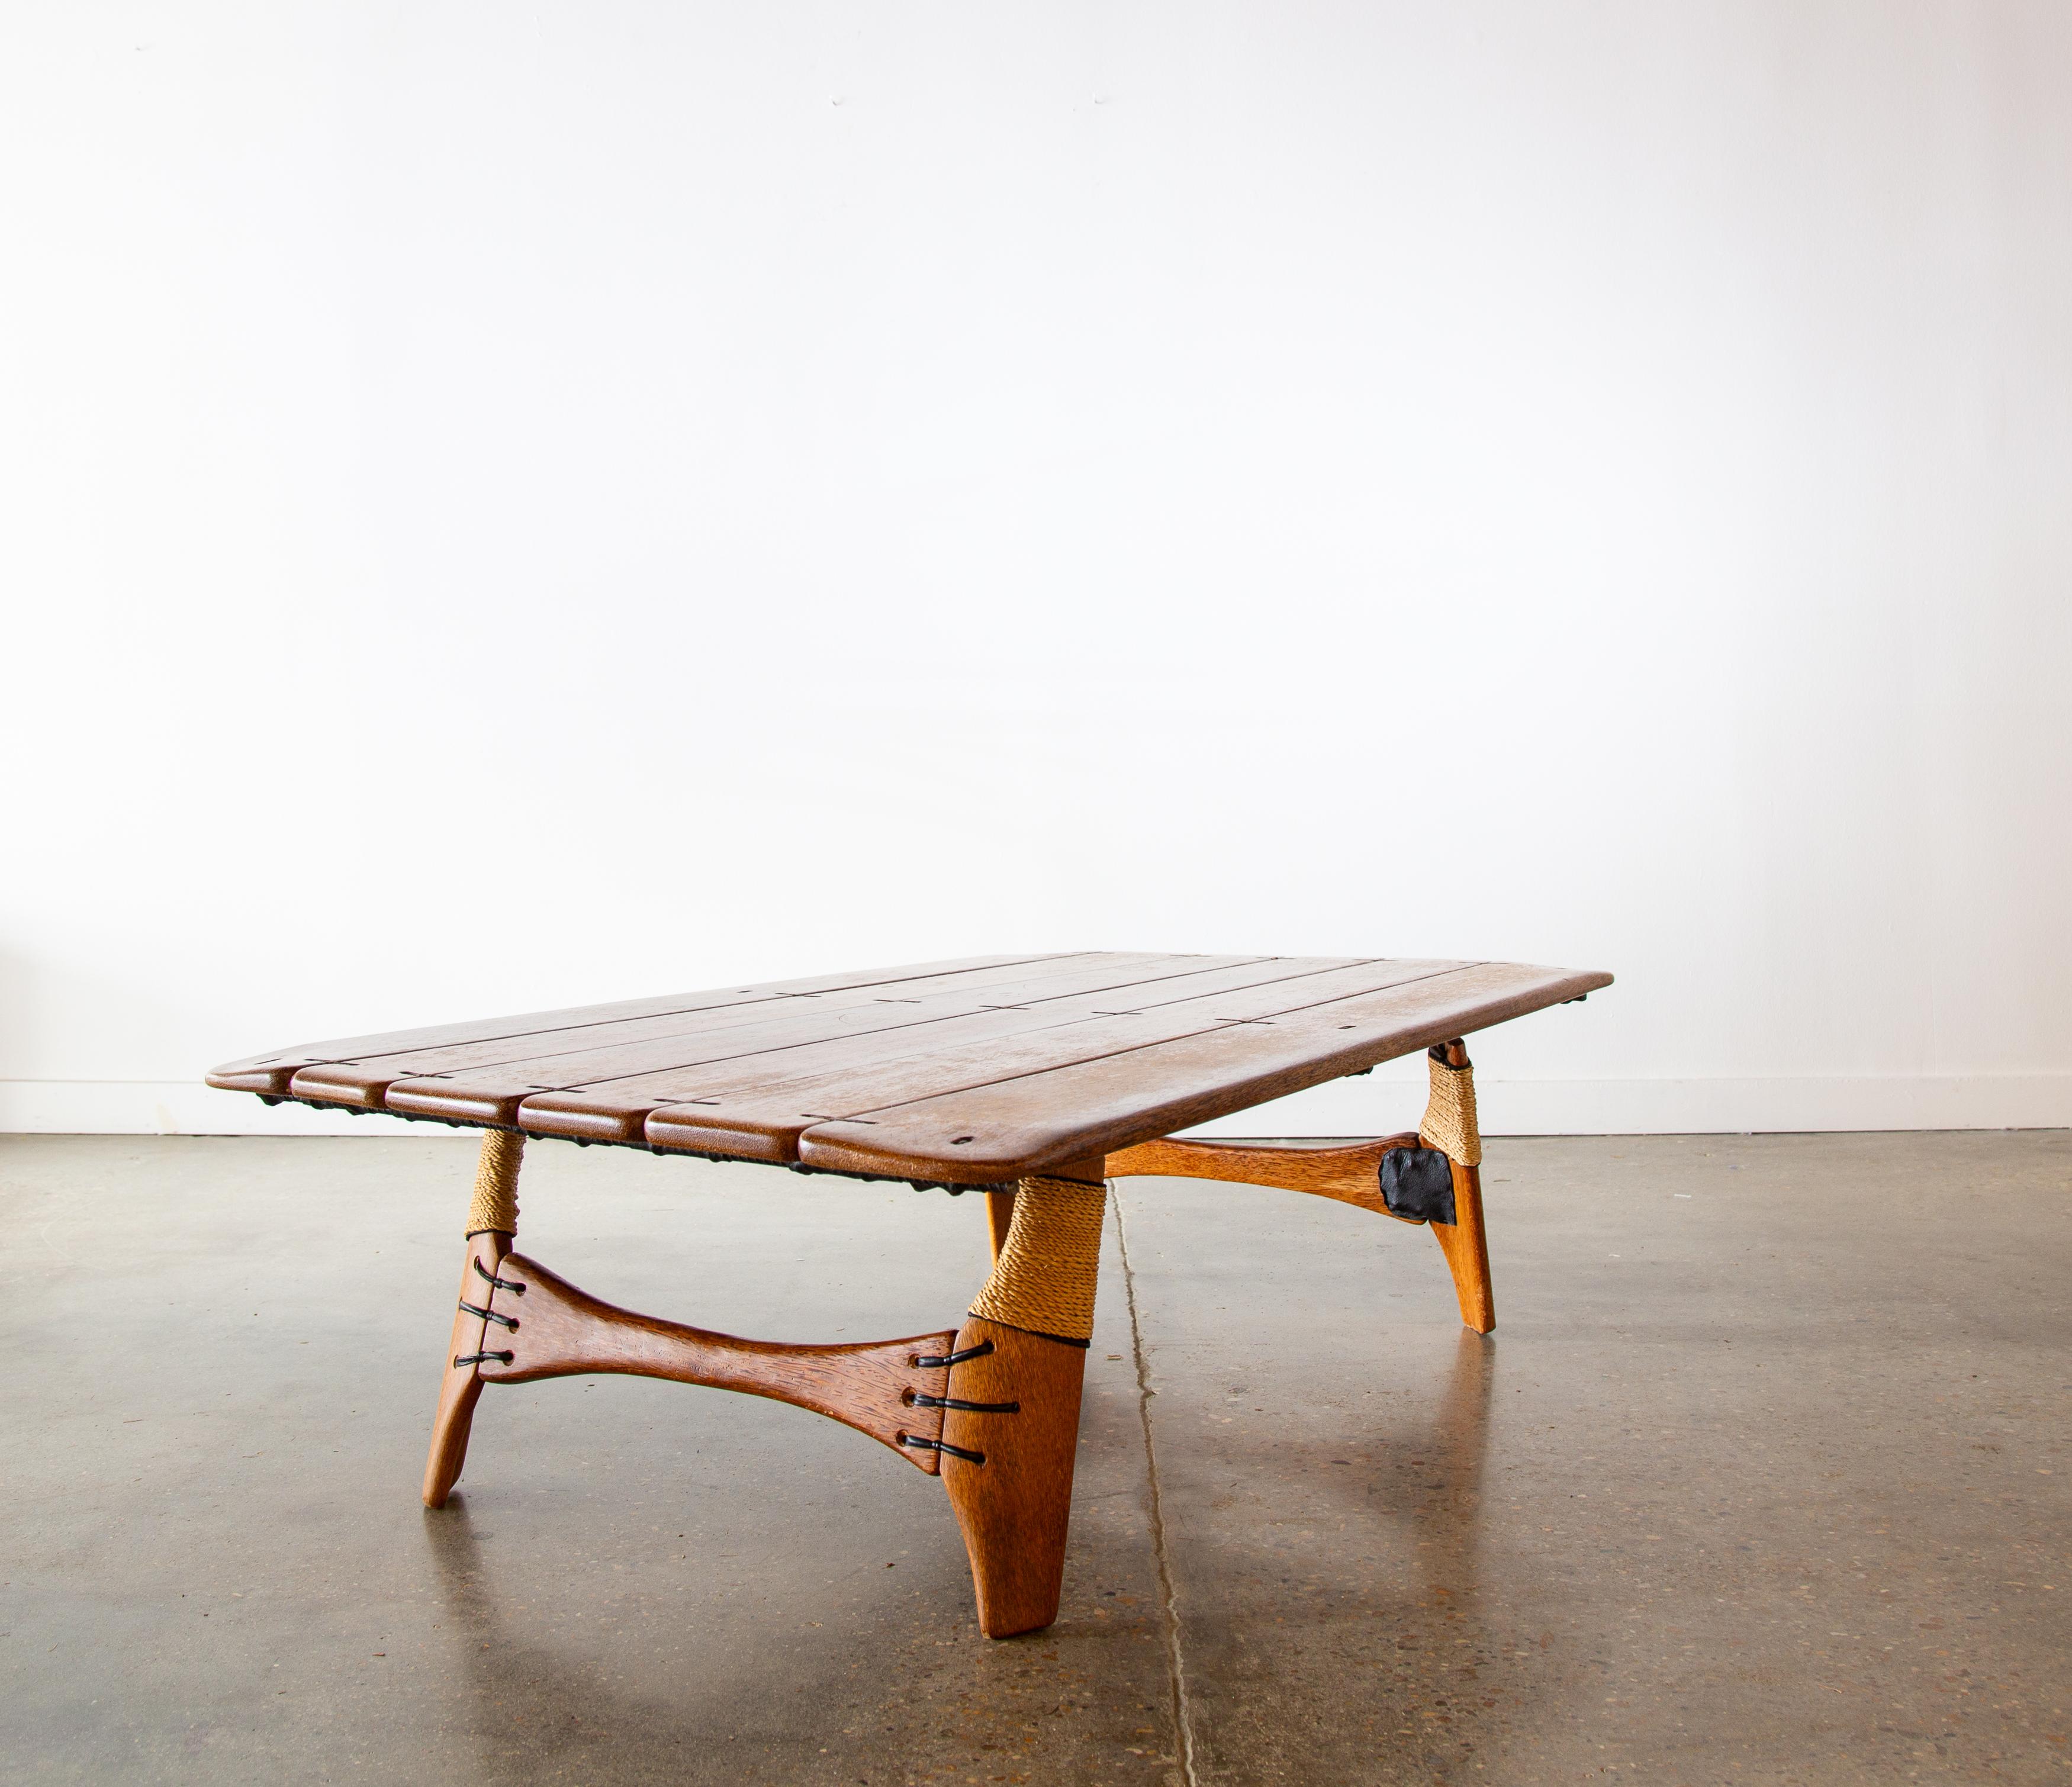 Remarquable table basse Navajo vert Pacifique, vers le début des années 2000. De superbes vibrations tropicales et côtières modernes. 

Fabriqué en bois de palmier, jute, fer et couture en cuir. Le bois de palme est récolté sur des palmiers non